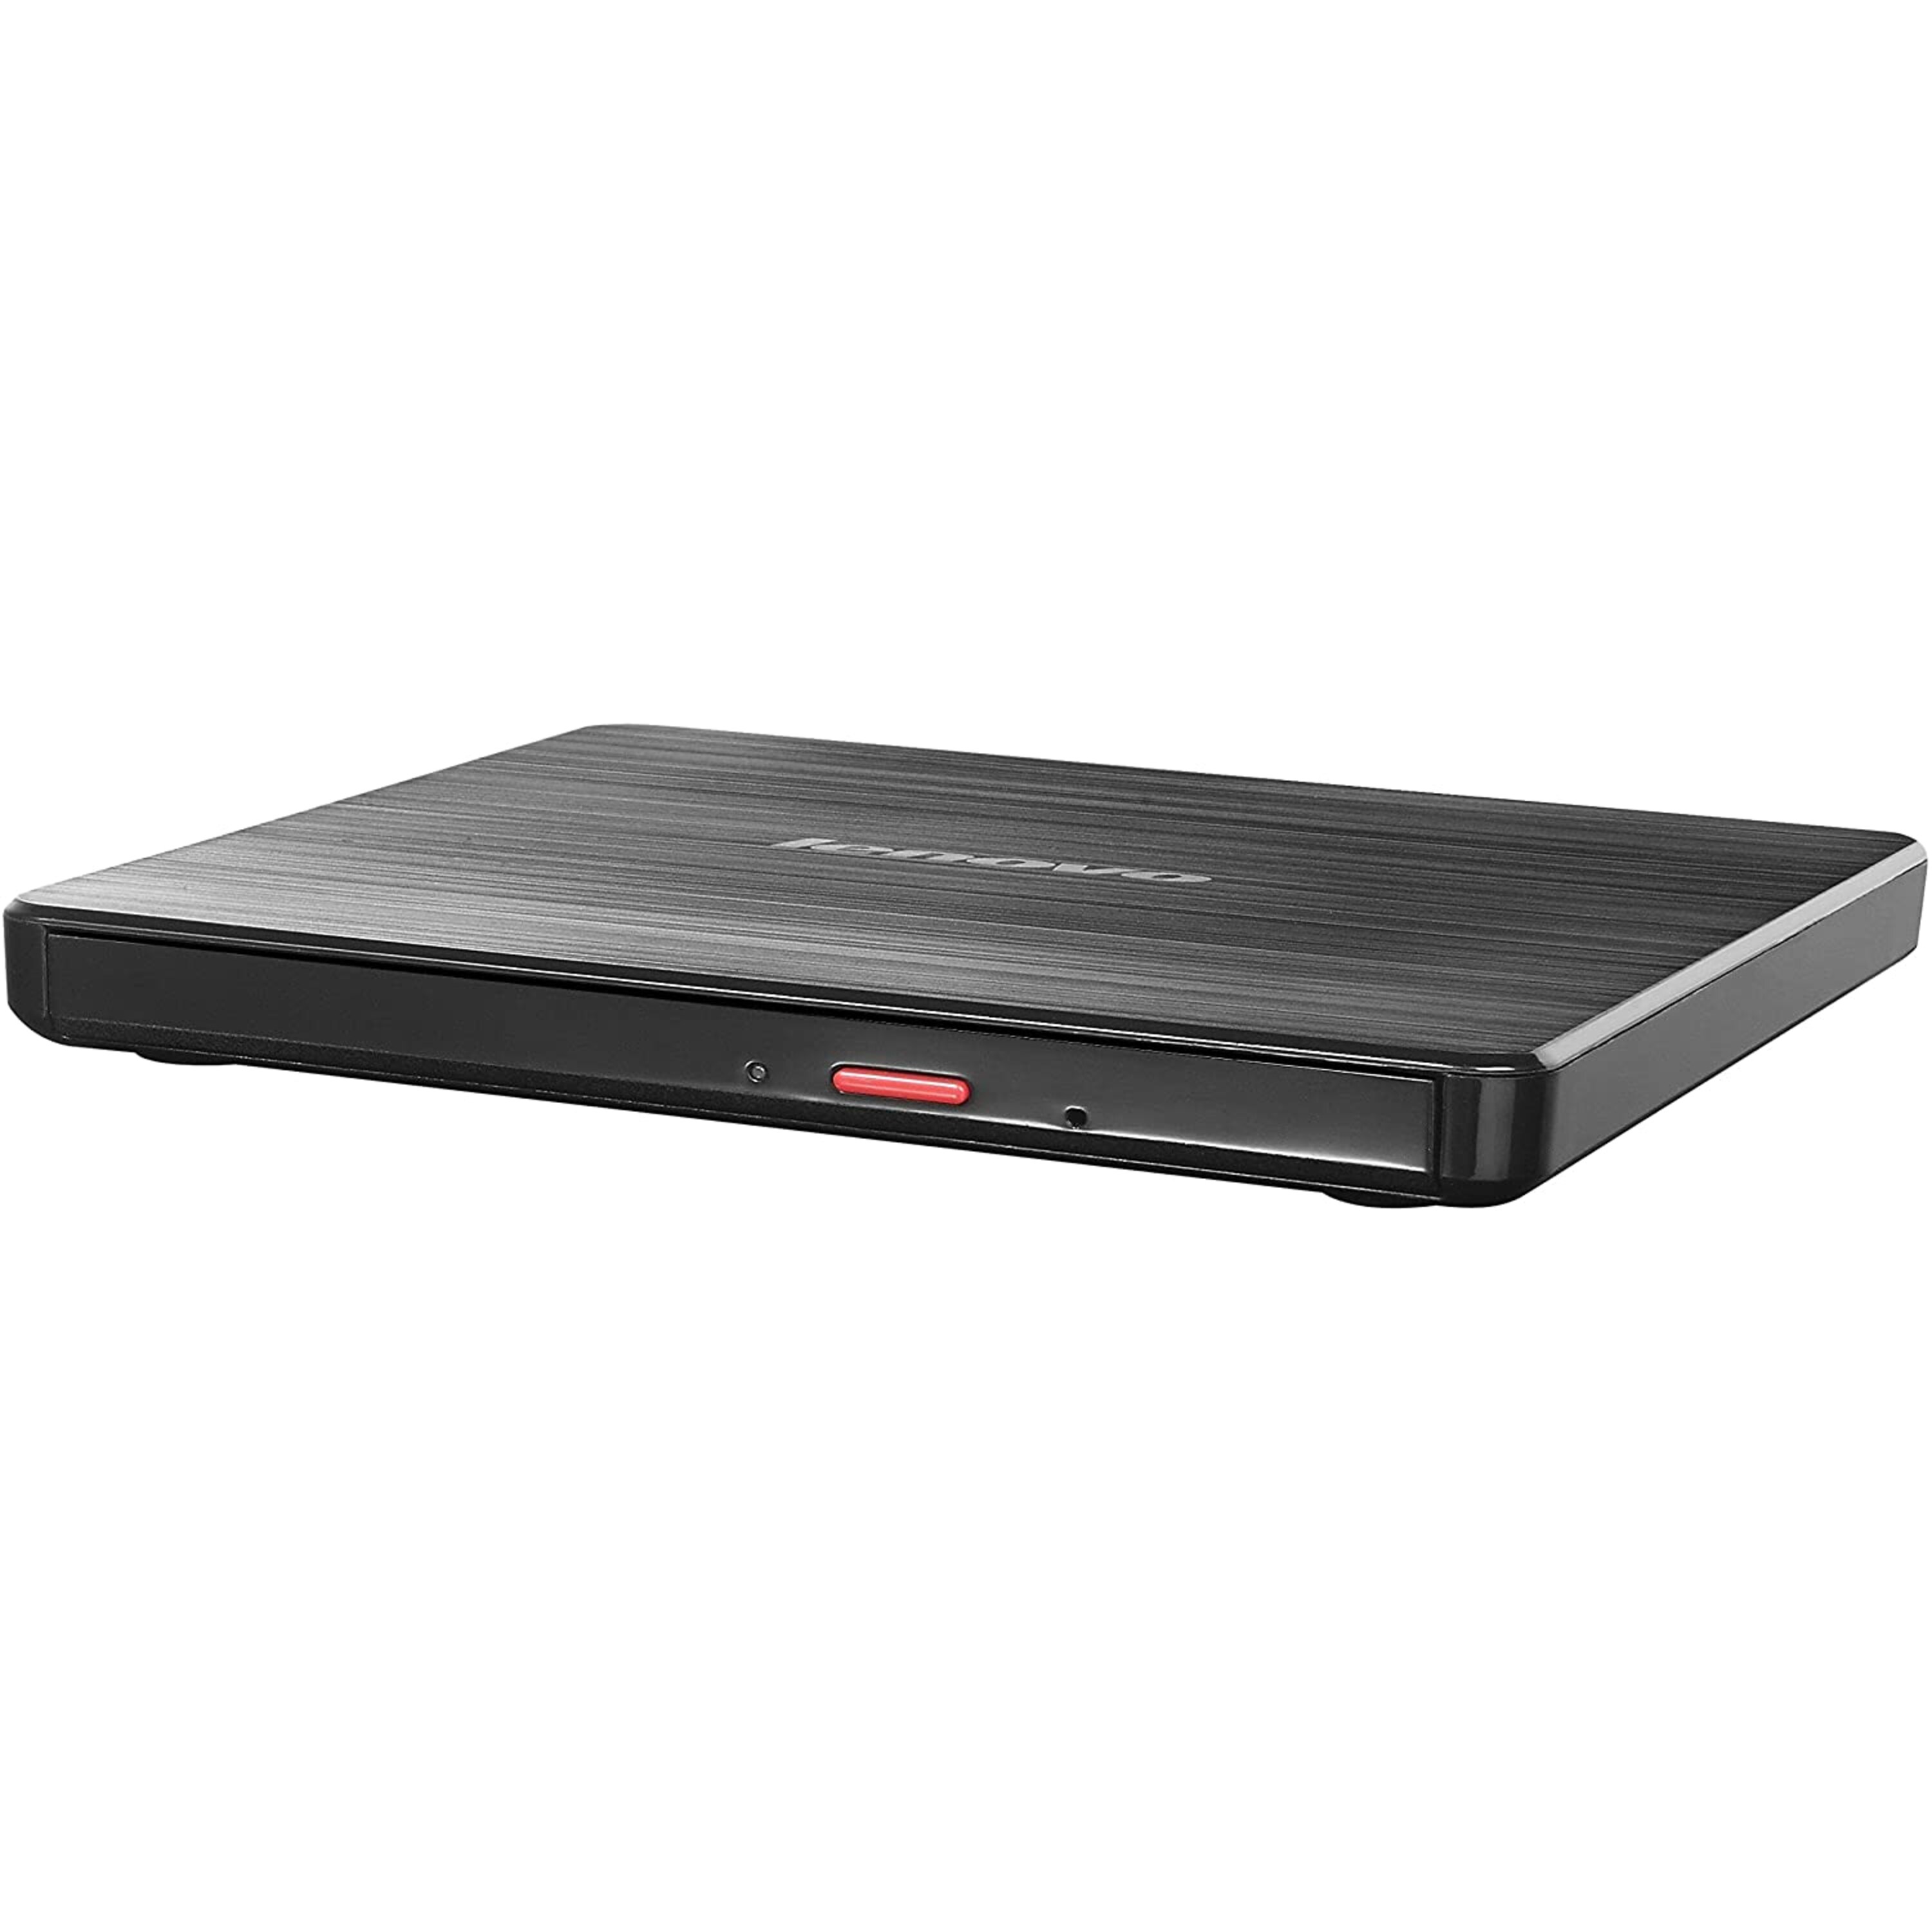 LENOVO Slim DVD-Brenner DB65, zum Beschreiben und Abspielen von CDs und DVDs, ultrakompakte und stabile Lösung für zu Hause und unterwegs